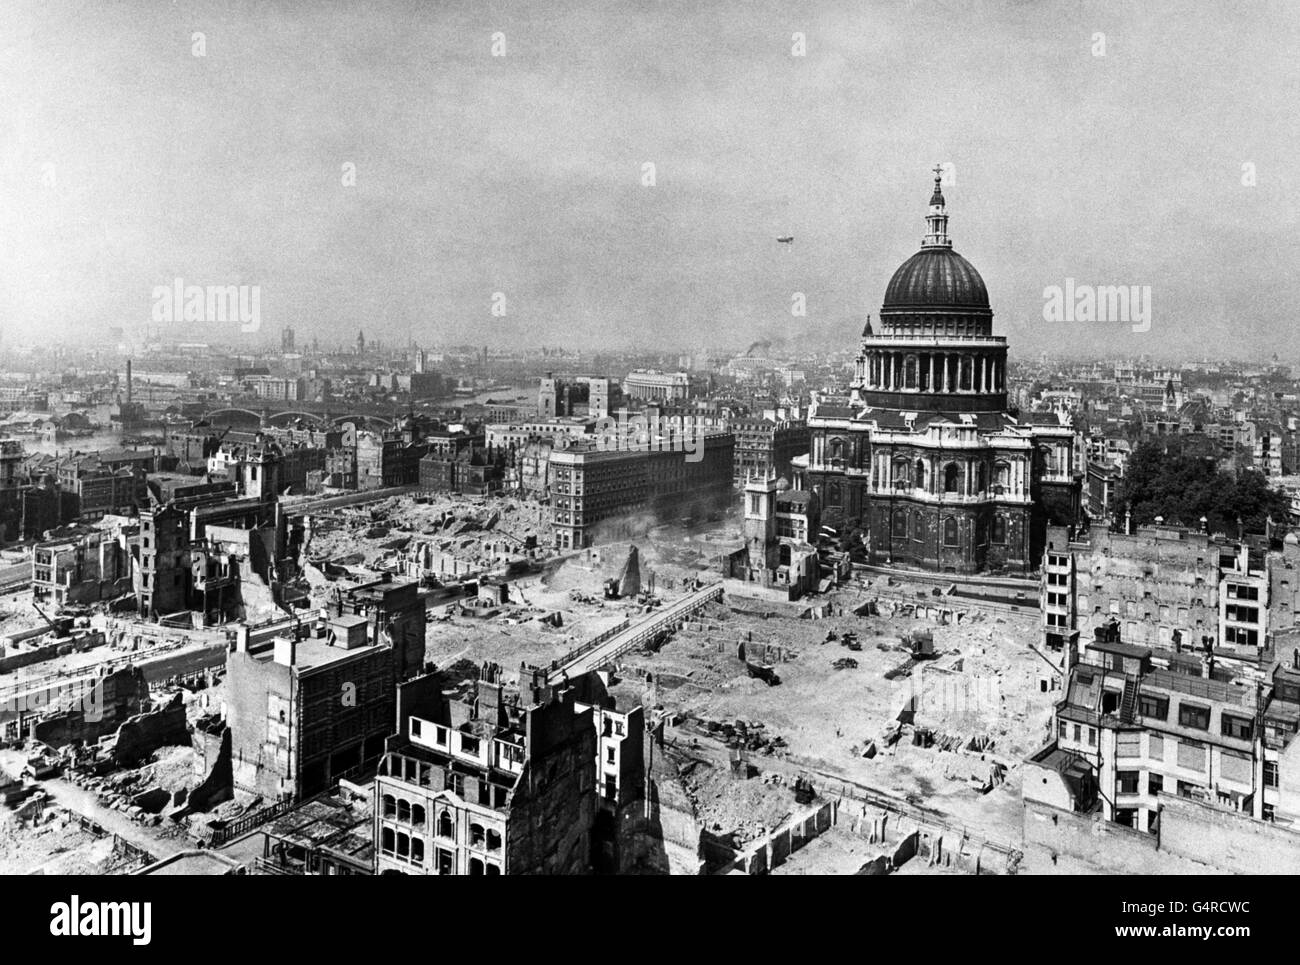 La Seconde Guerre mondiale - Empire britannique - Accueil - Avant la guerre - Londres - 1945 Banque D'Images